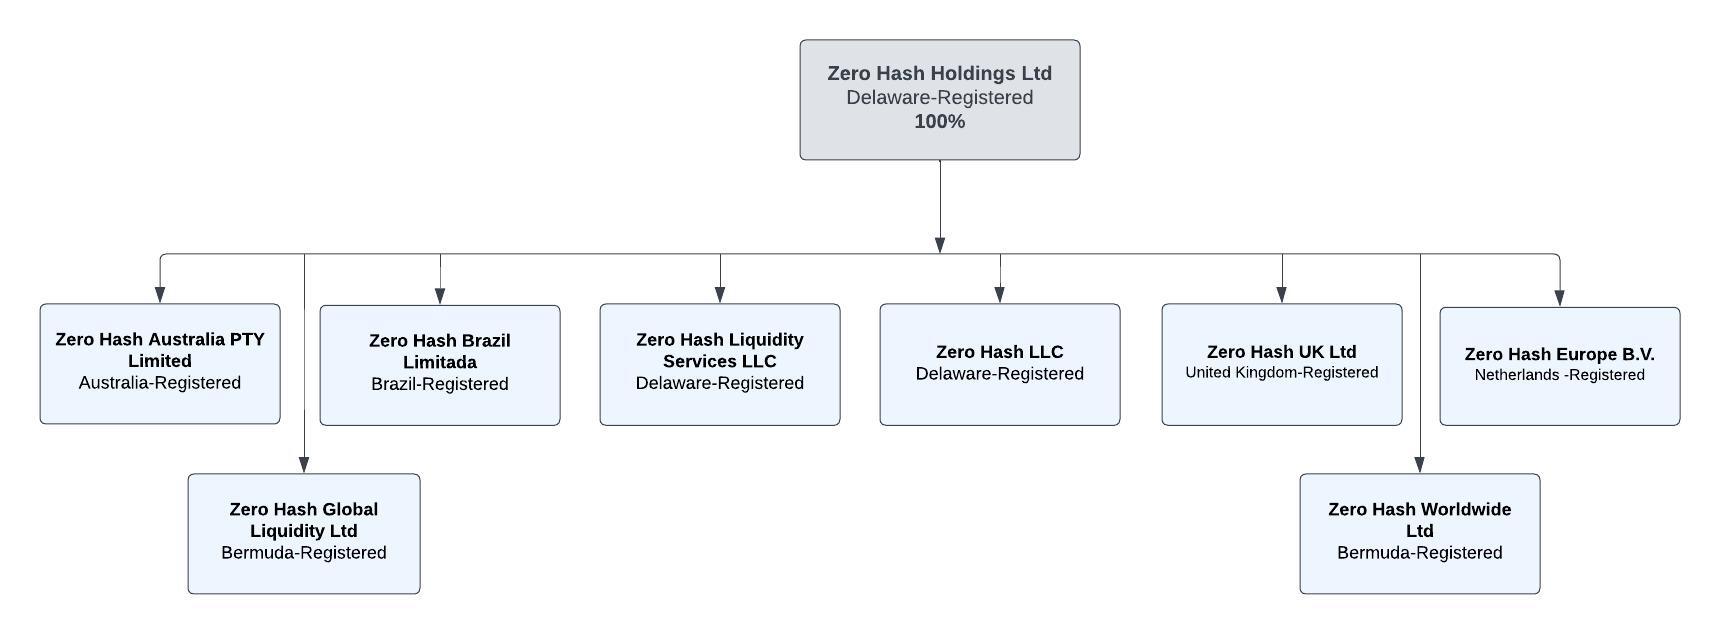 ZHH Ltd Org Chart - Official .jpeg